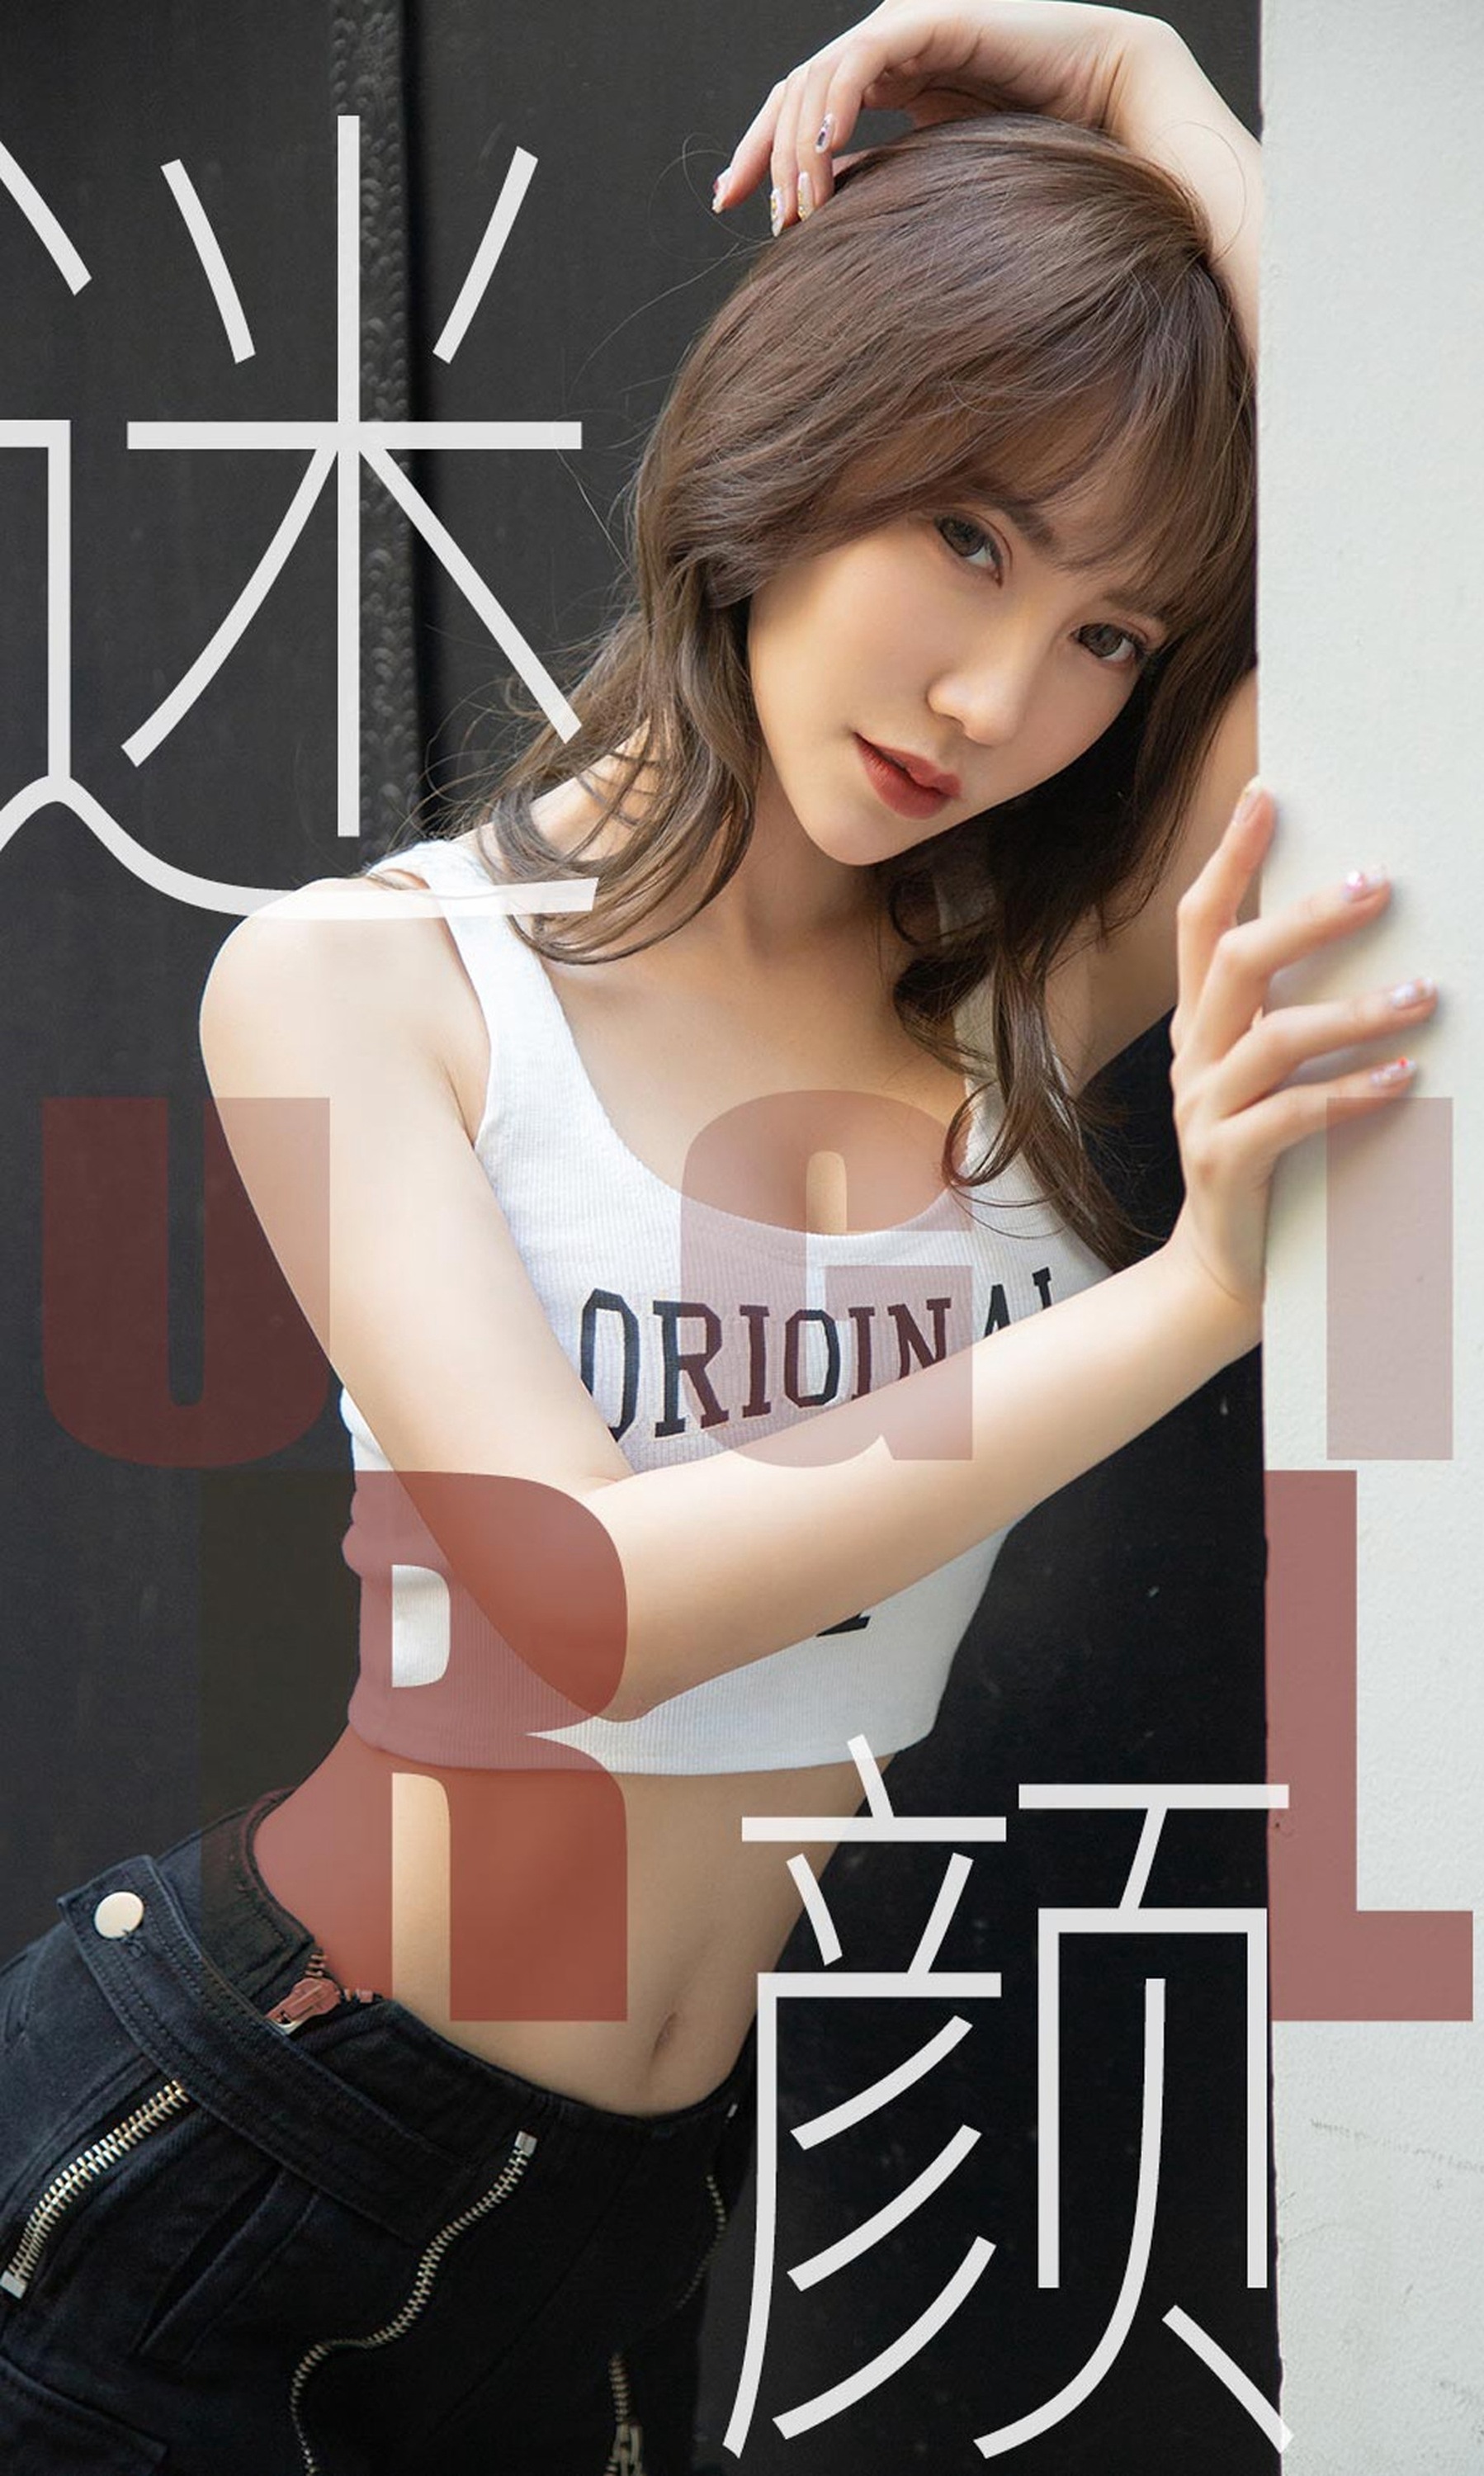 [ugirls Youguo] love Youwu album 2019.06.01 no.1473 Xia lingman fan Yan